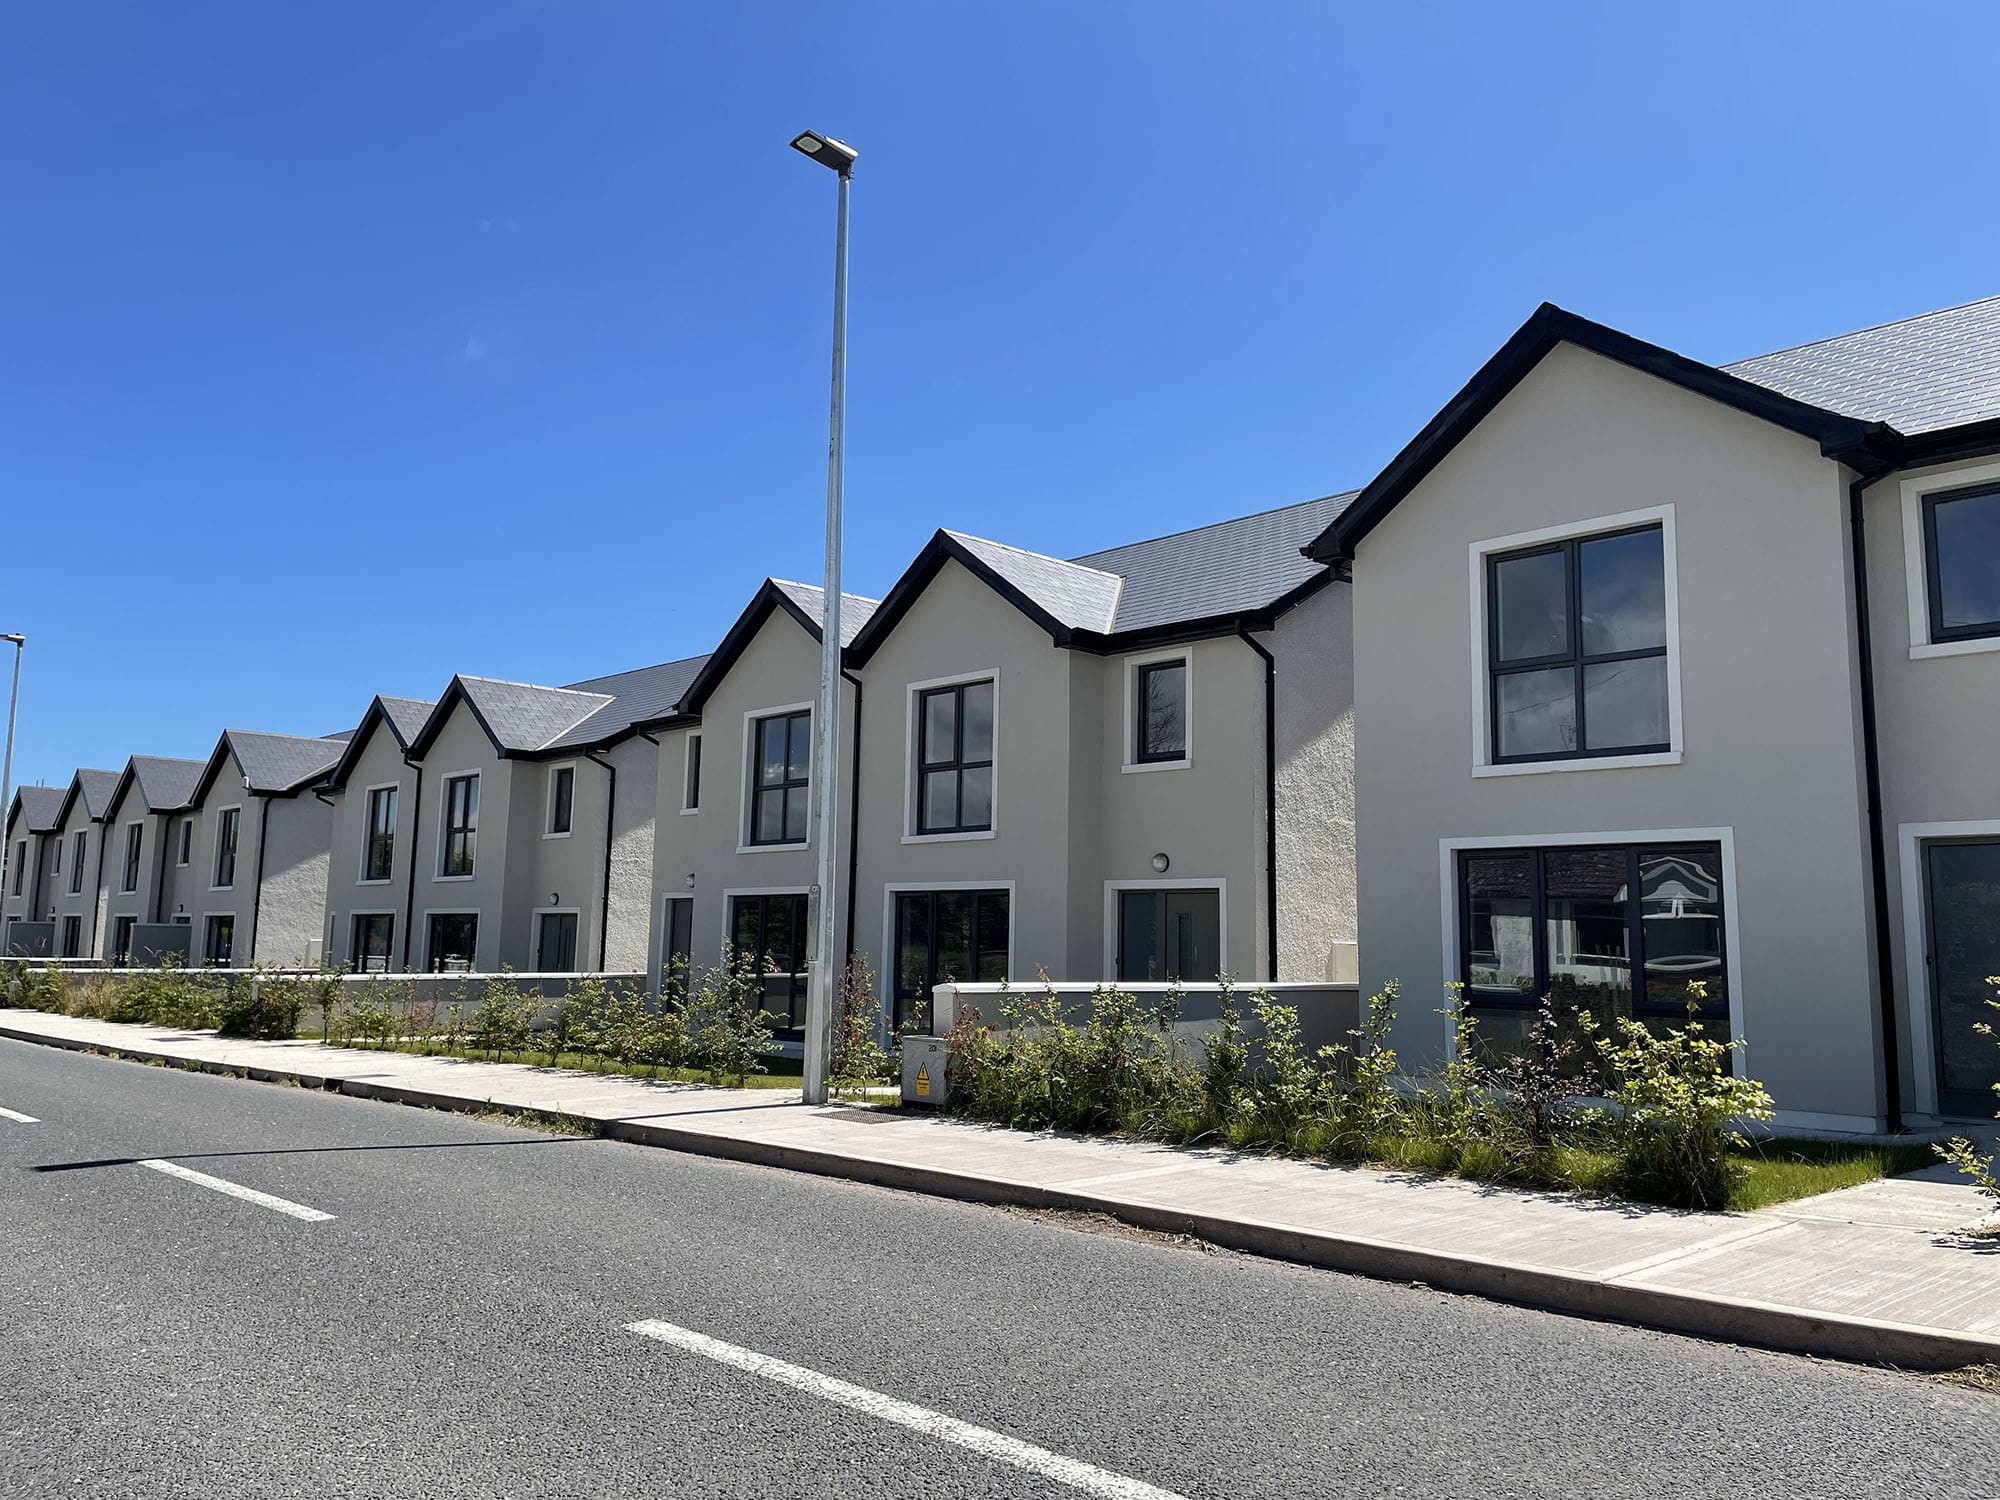 Hướng dẫn mua bất động sản ở Ireland